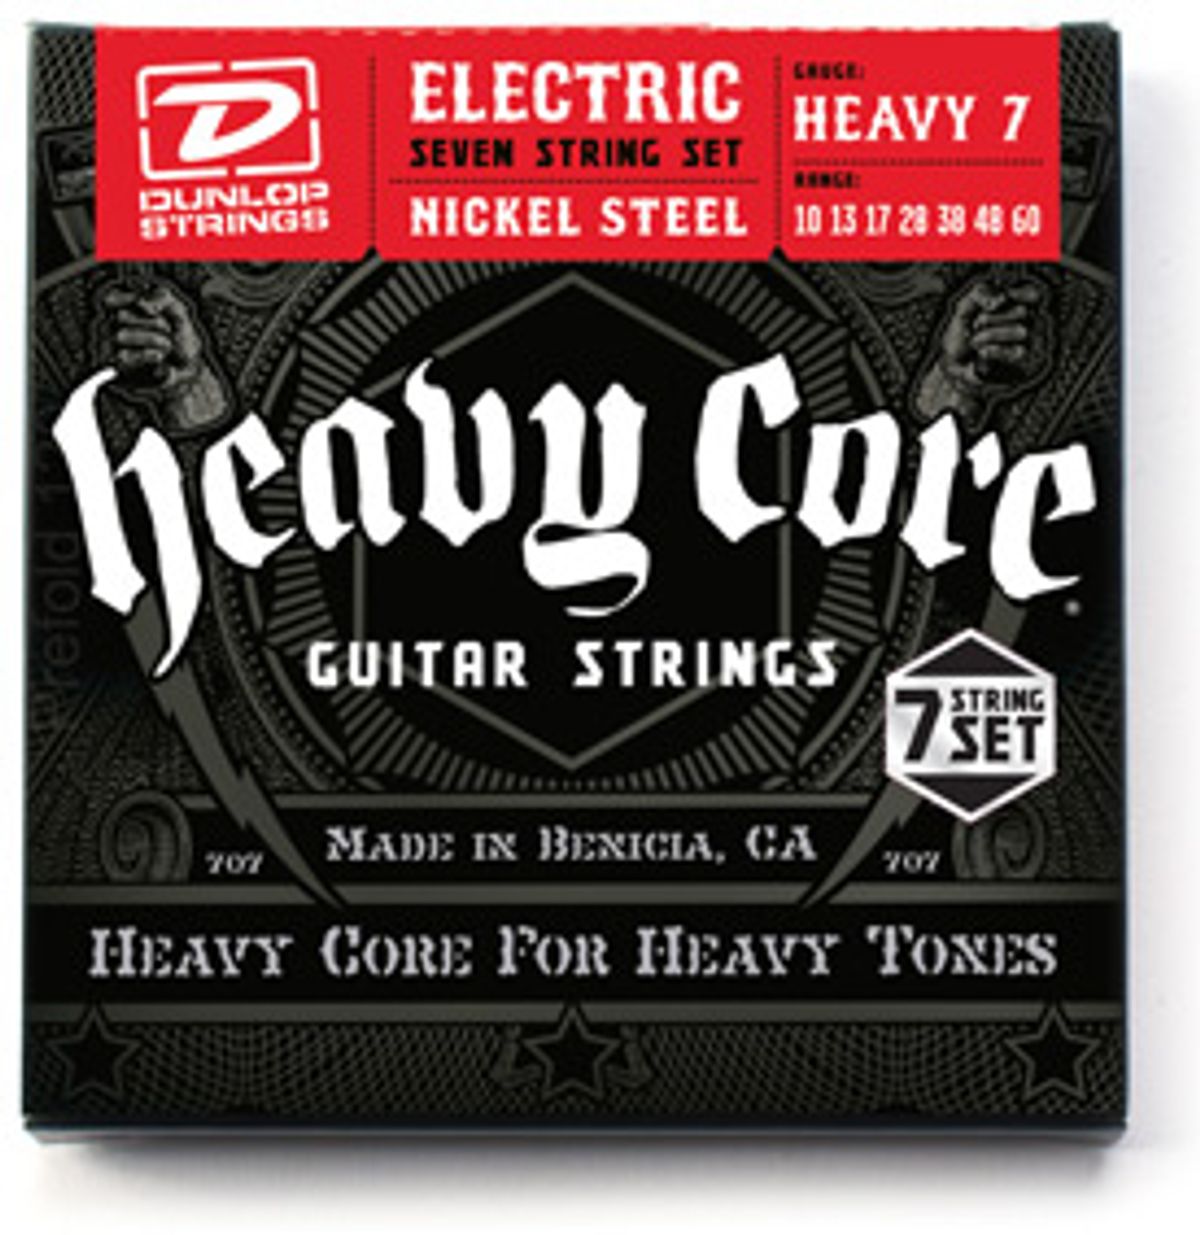 Dunlop Announces Heavy Core Seven String Set